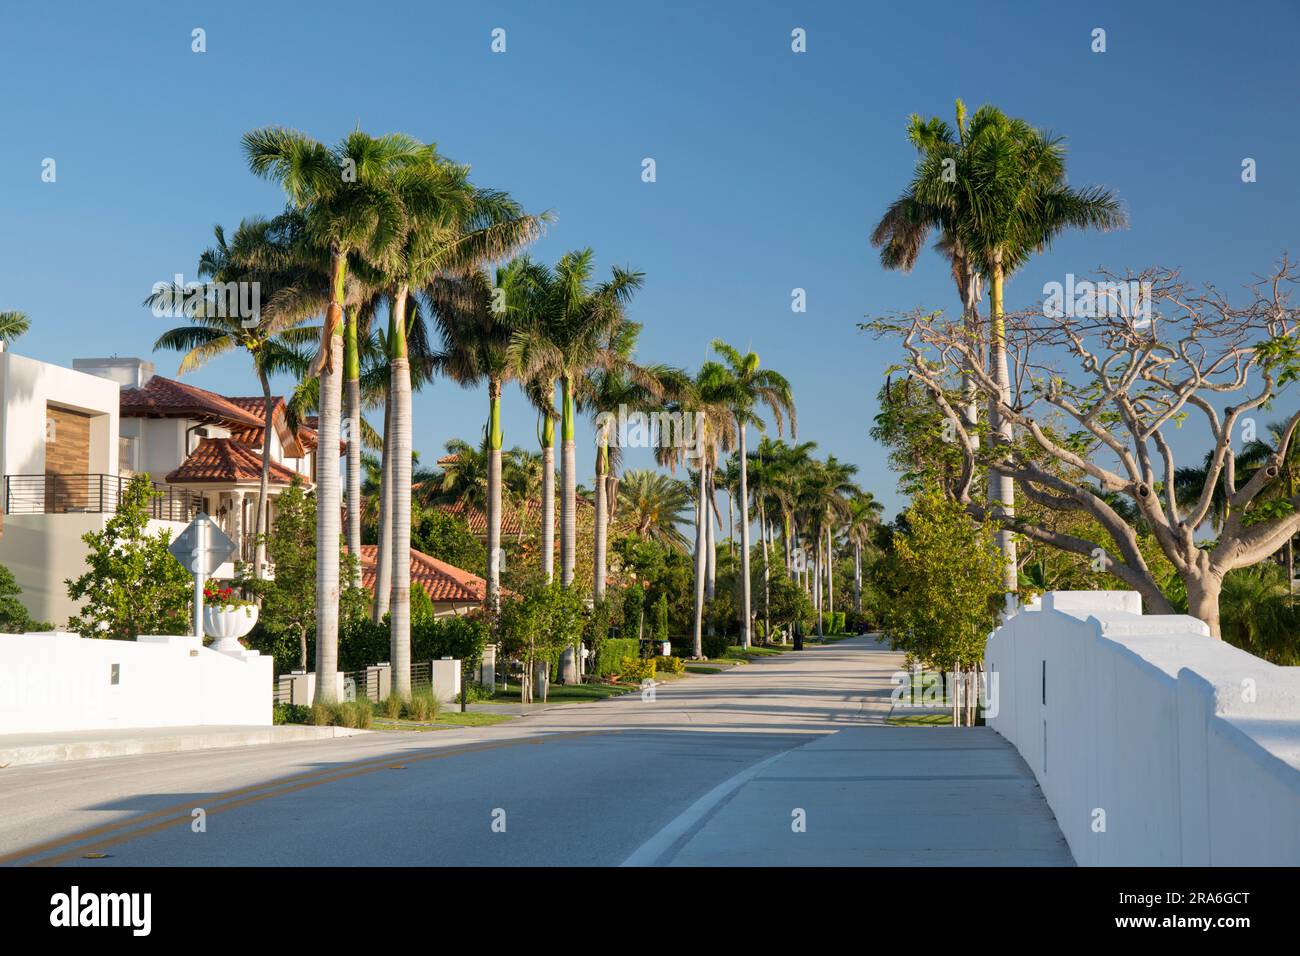 Fort Lauderdale, Floride, États-Unis. Vue le long de Royal Palm Drive, une avenue résidentielle typique bordée d'arbres dans le quartier Nurmi Isles. Banque D'Images